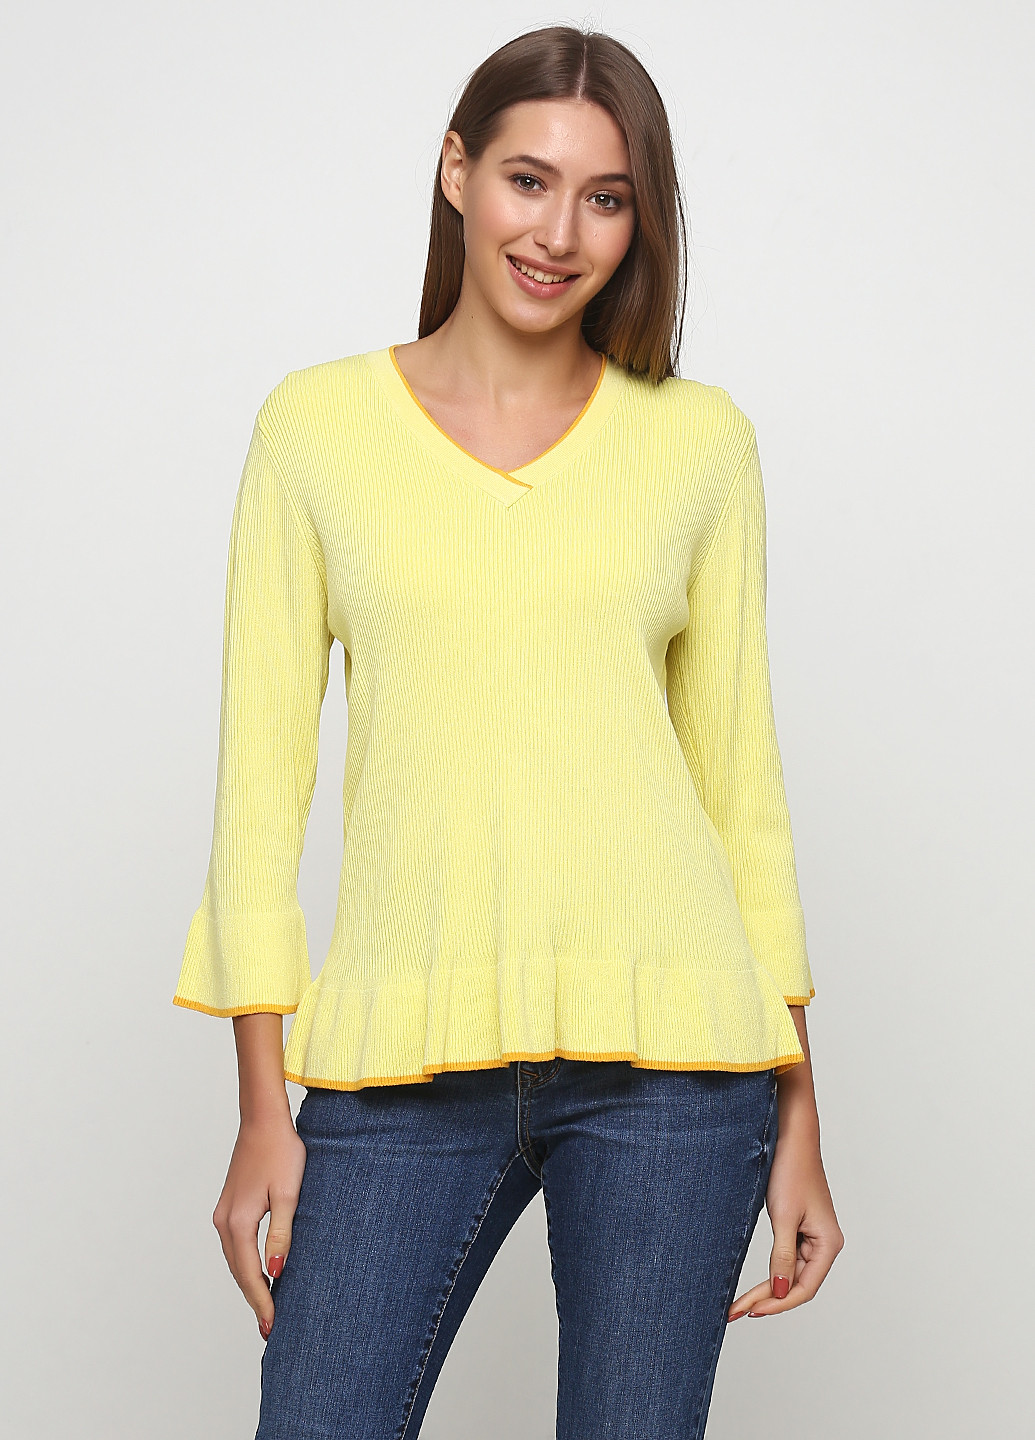 Желтый демисезонный пуловер пуловер Friendtex